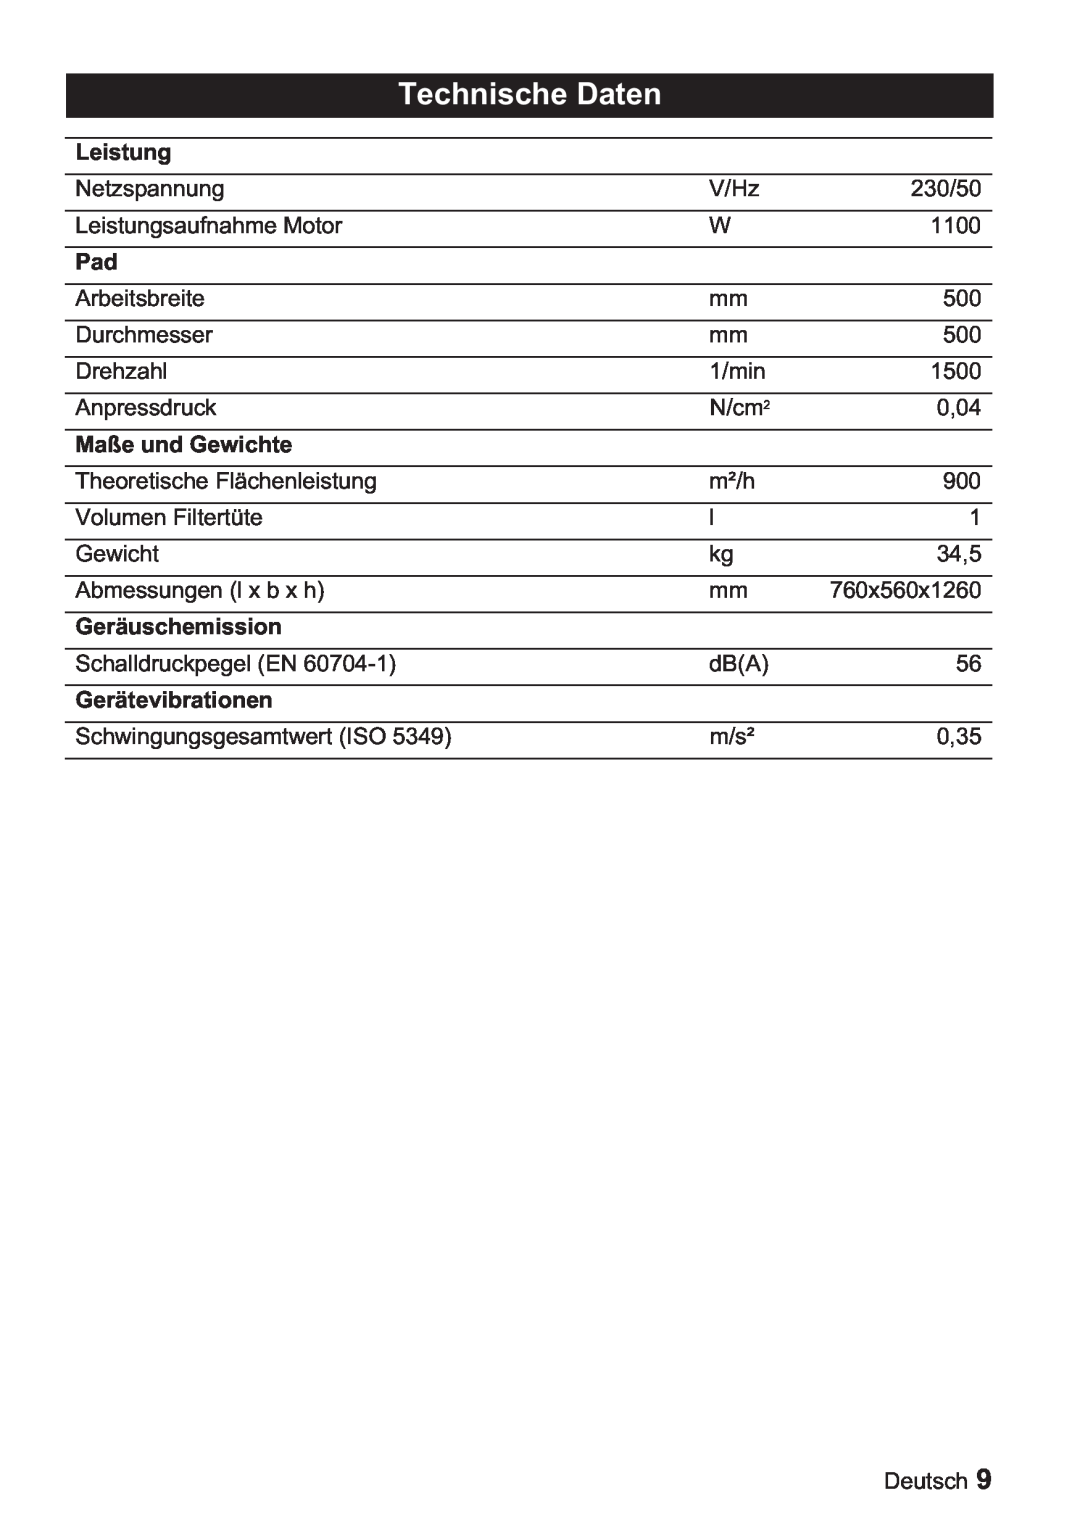 Karcher BDP 50, BDP 1500 manual Technische Daten, Leistung, Maße und Gewichte, Geräuschemission, Gerätevibrationen 